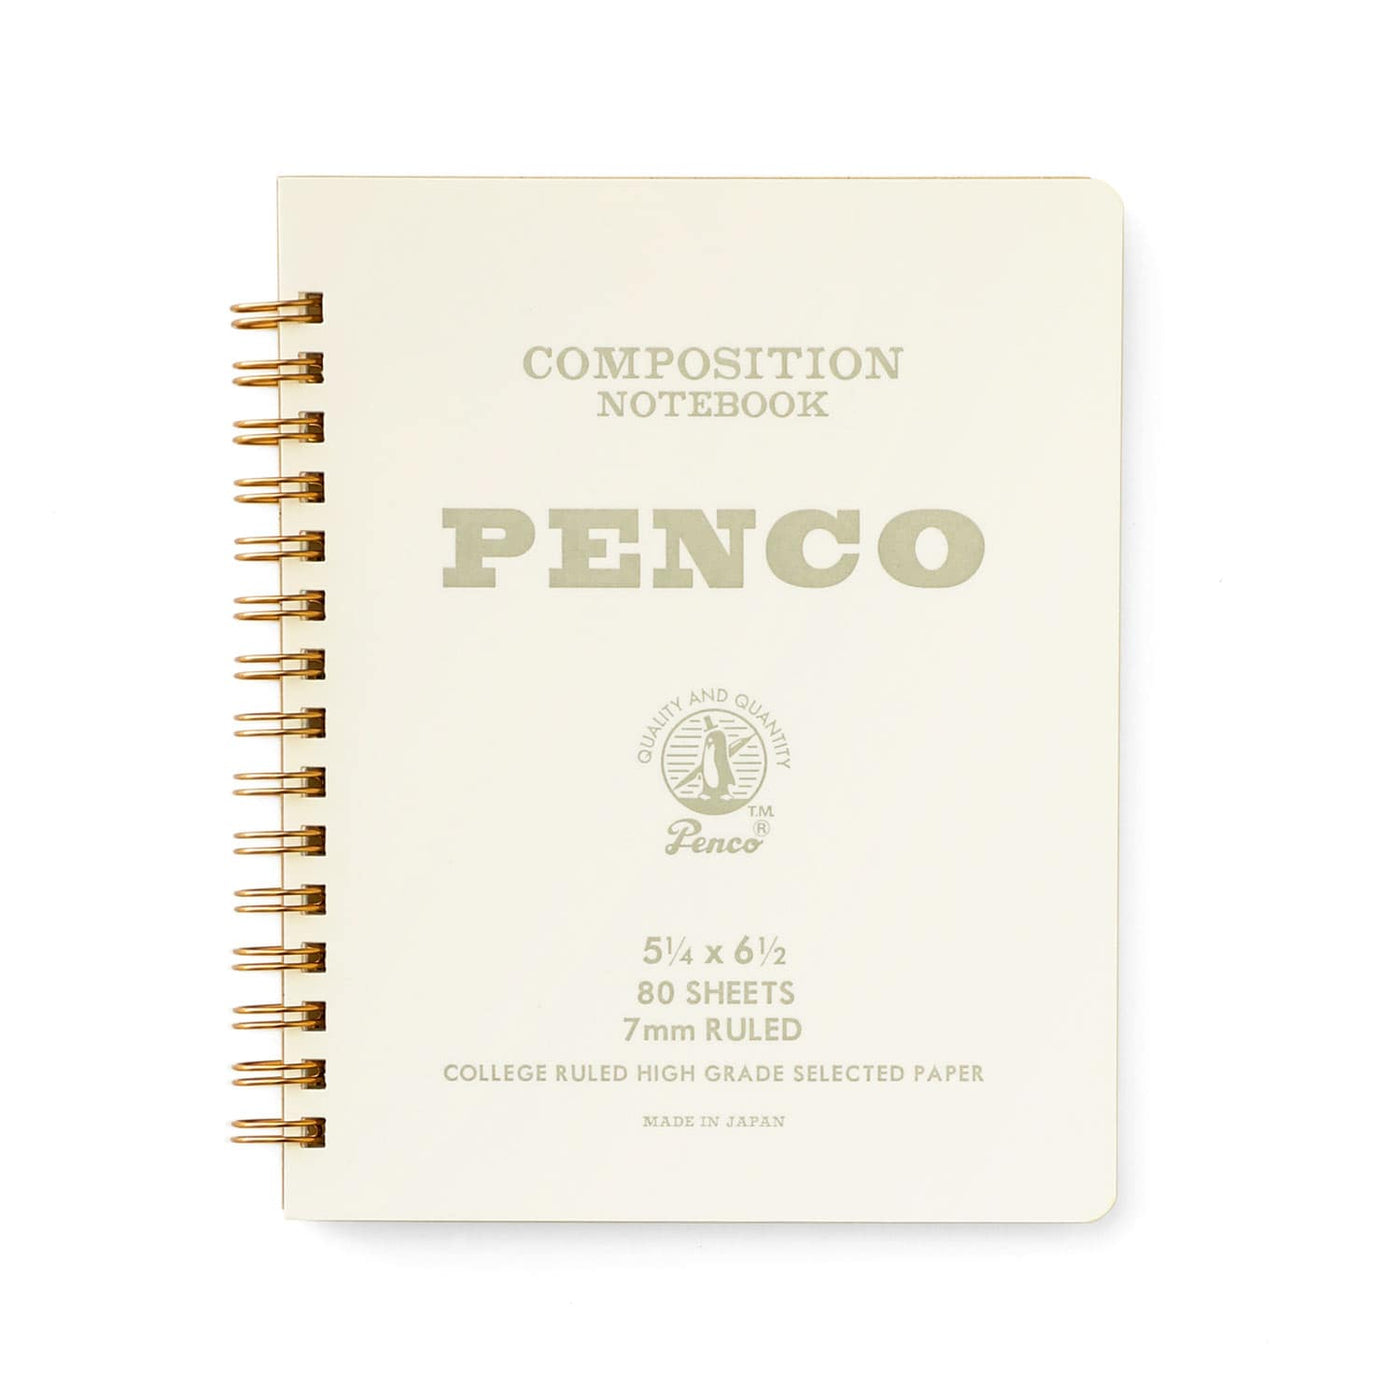 Penco Coil Notebook - Medium